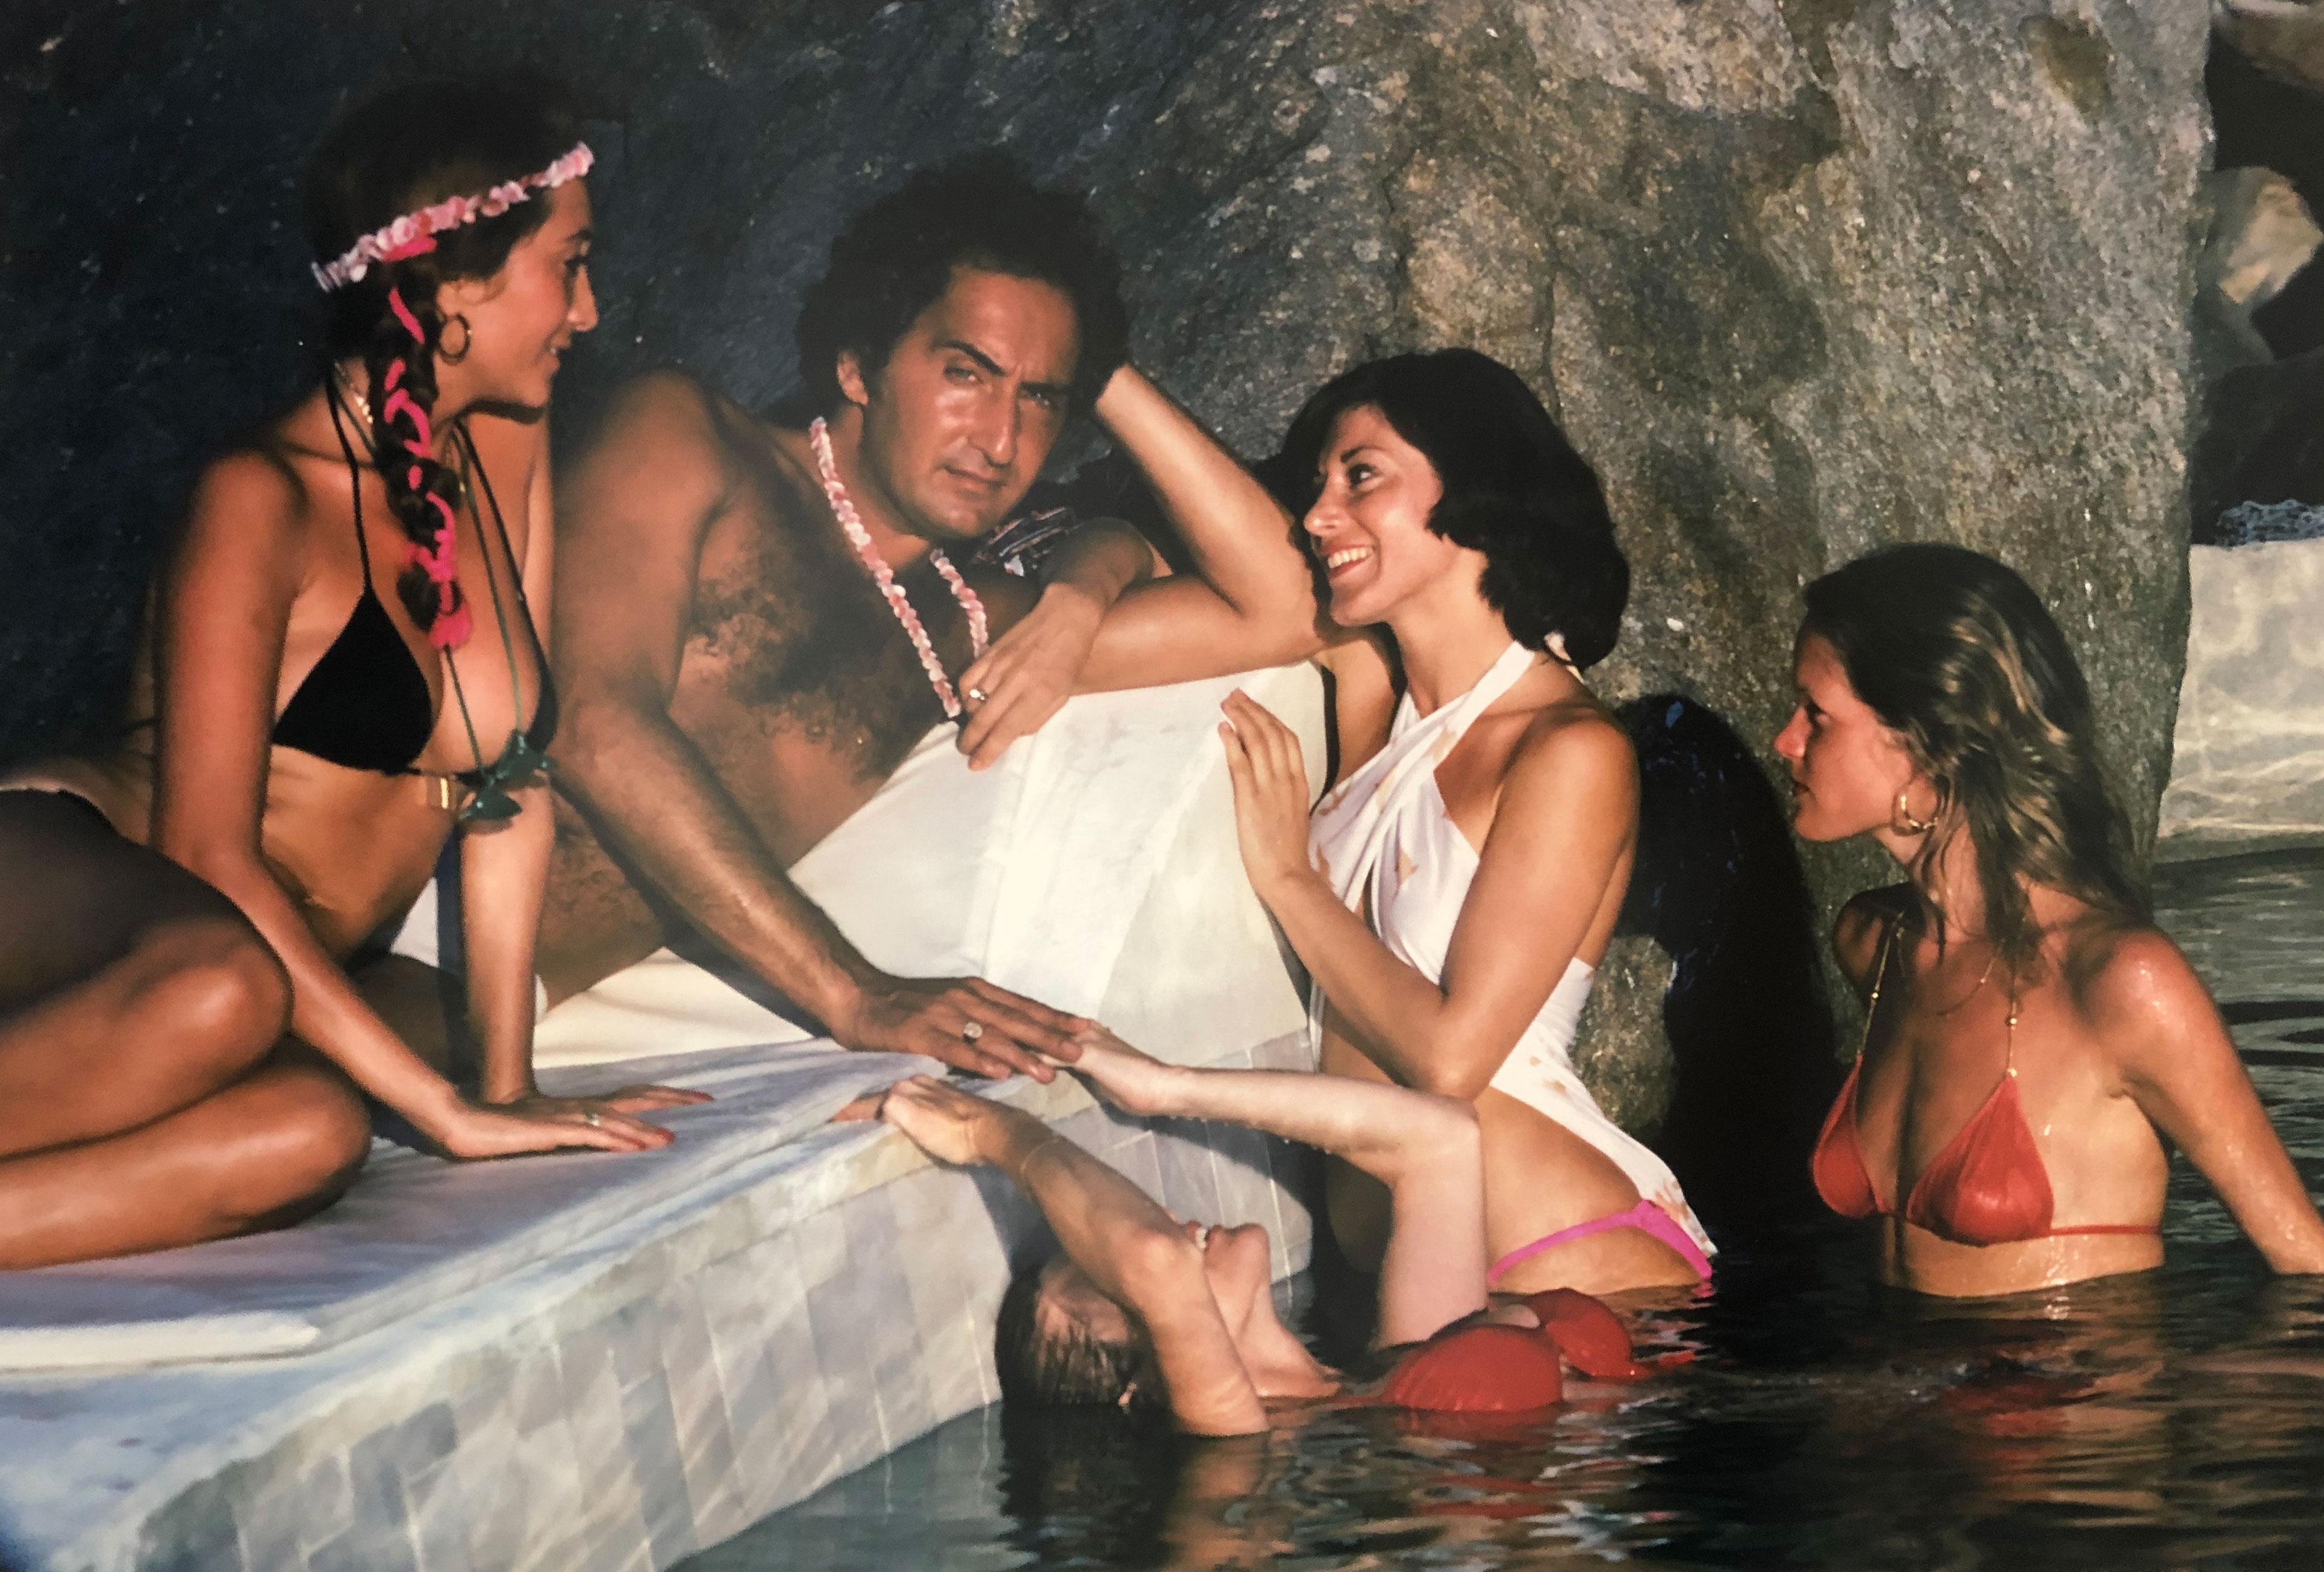 Au bord de la piscine à Acapulco, 1978
C Imprimer
24 x 20 pouces
Tirage de 150 exemplaires, numérotés à la main, avec certificat d'authenticité. 

Un homme bronzé entouré de jeunes femmes en bikini au bord de la piscine de la villa de Warren Avis à